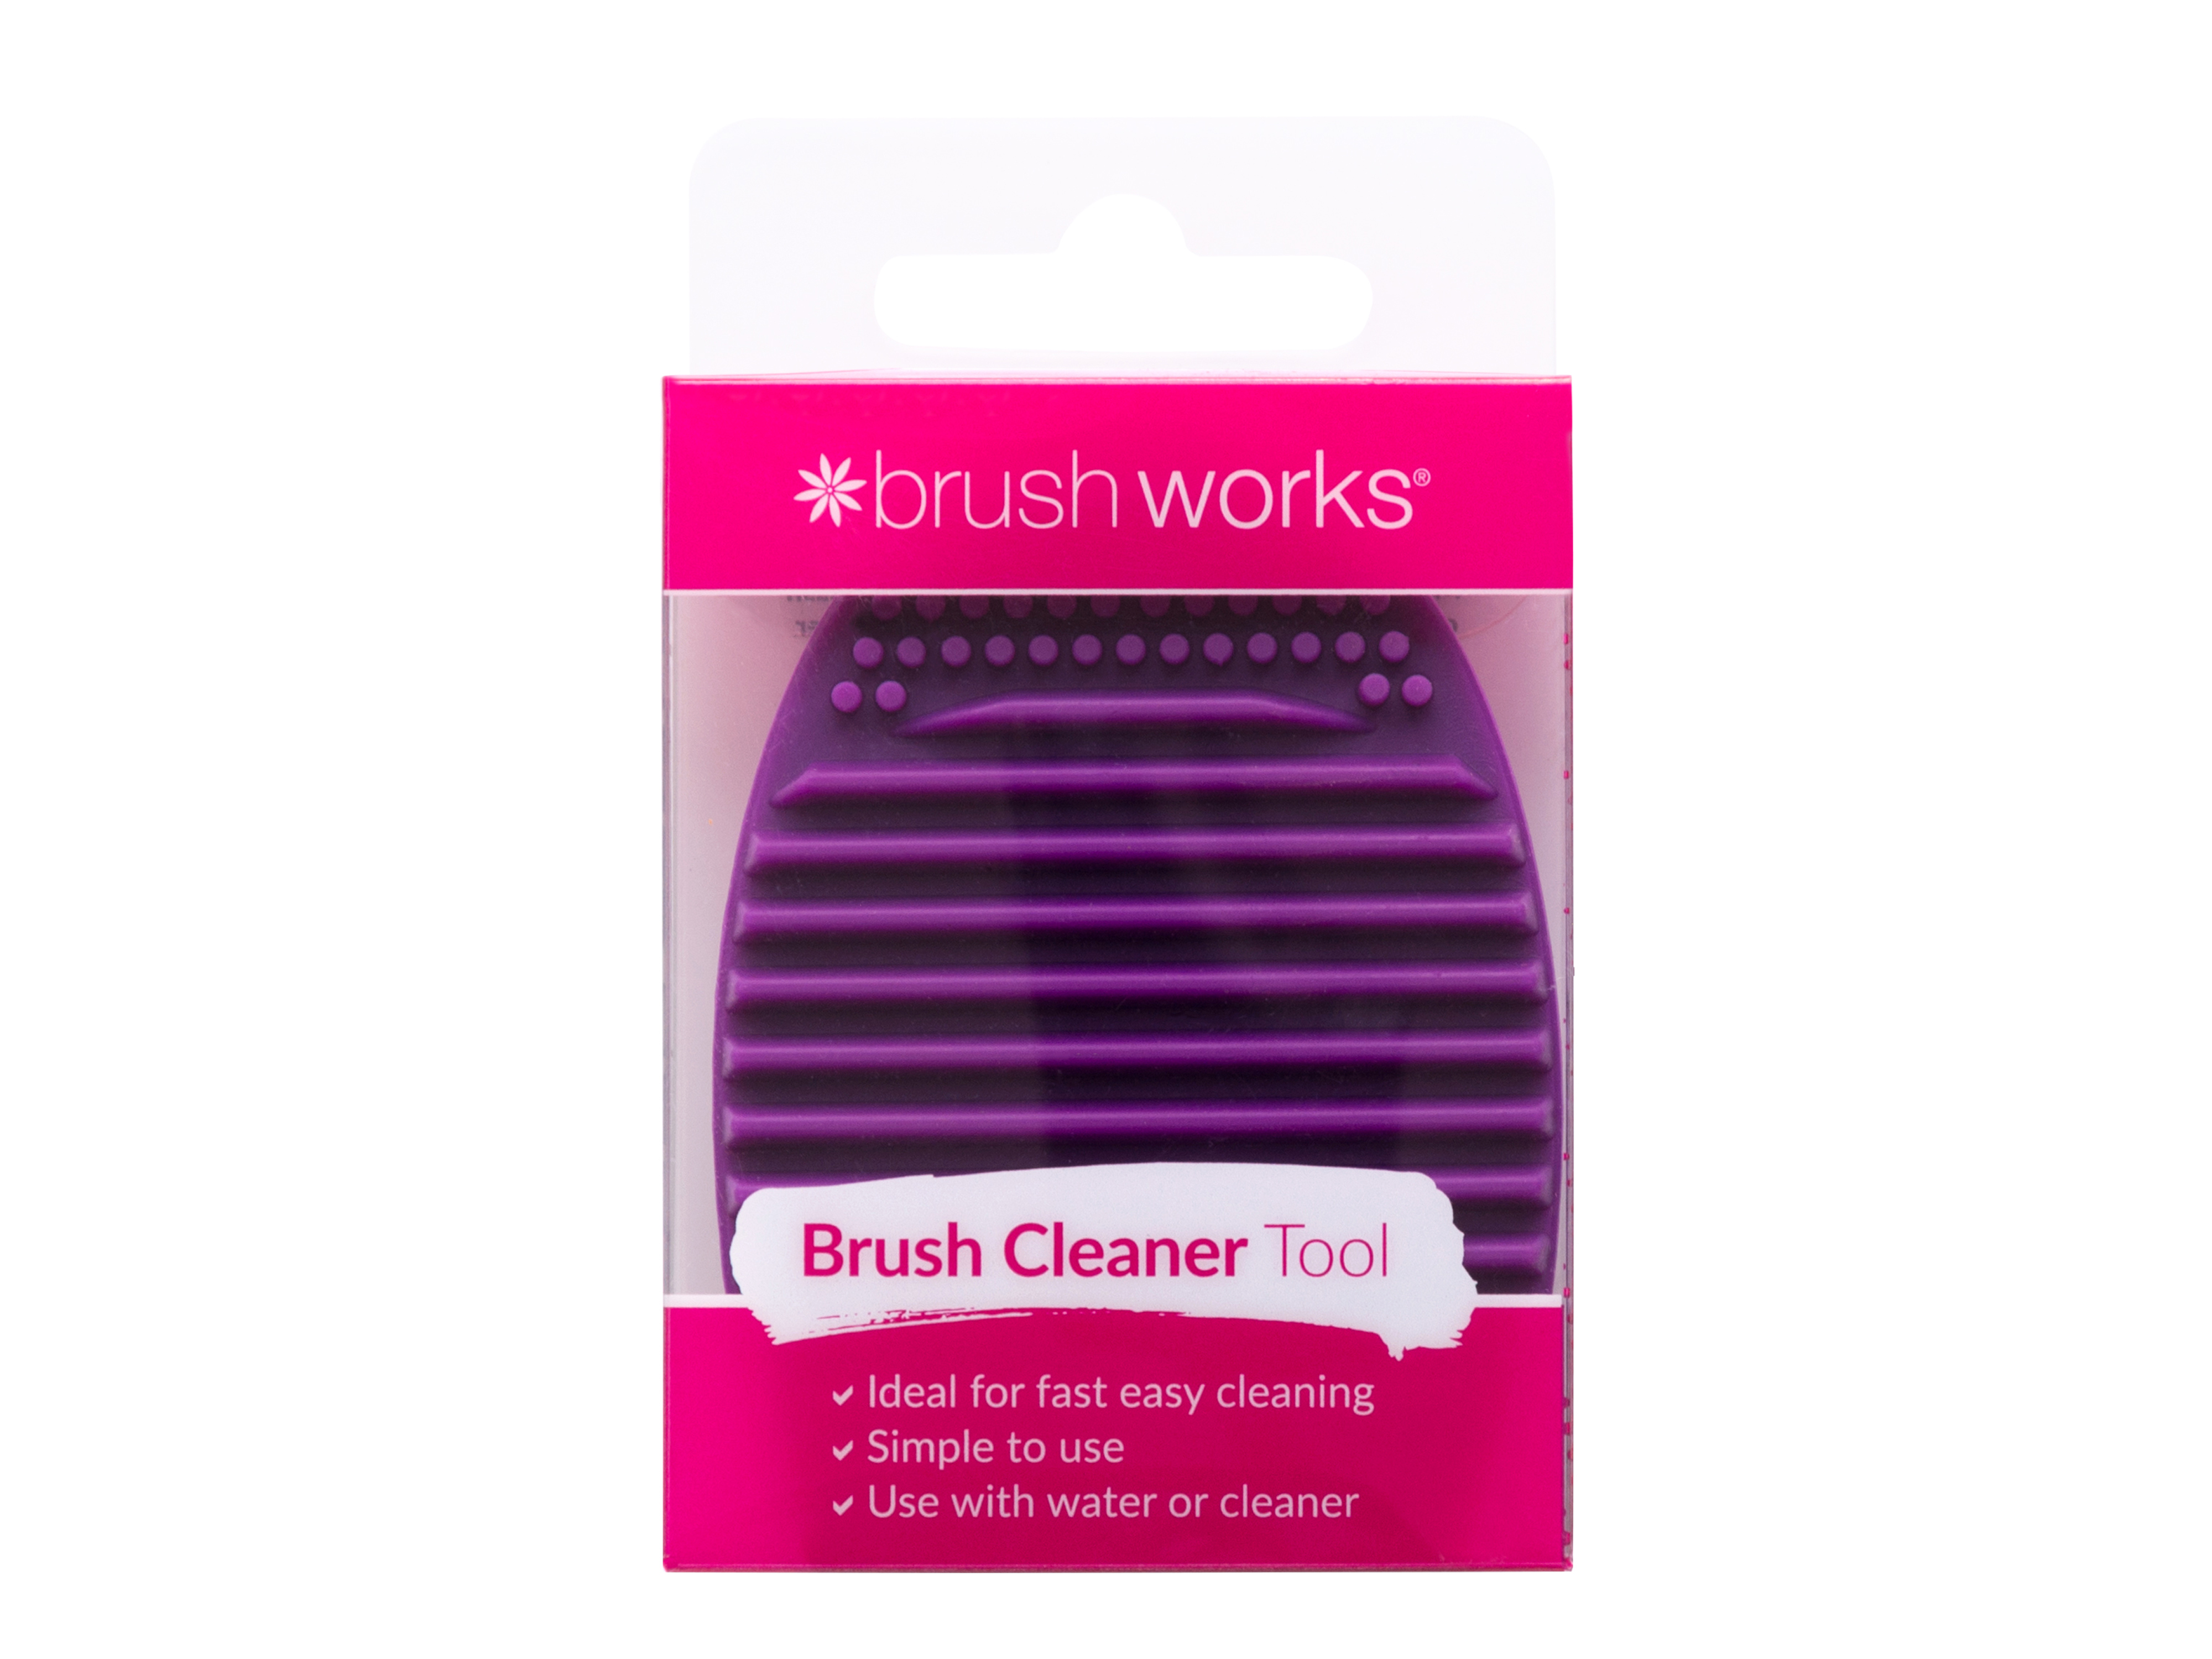 Brushworks Brush Cleaner Tool, 1 stk.